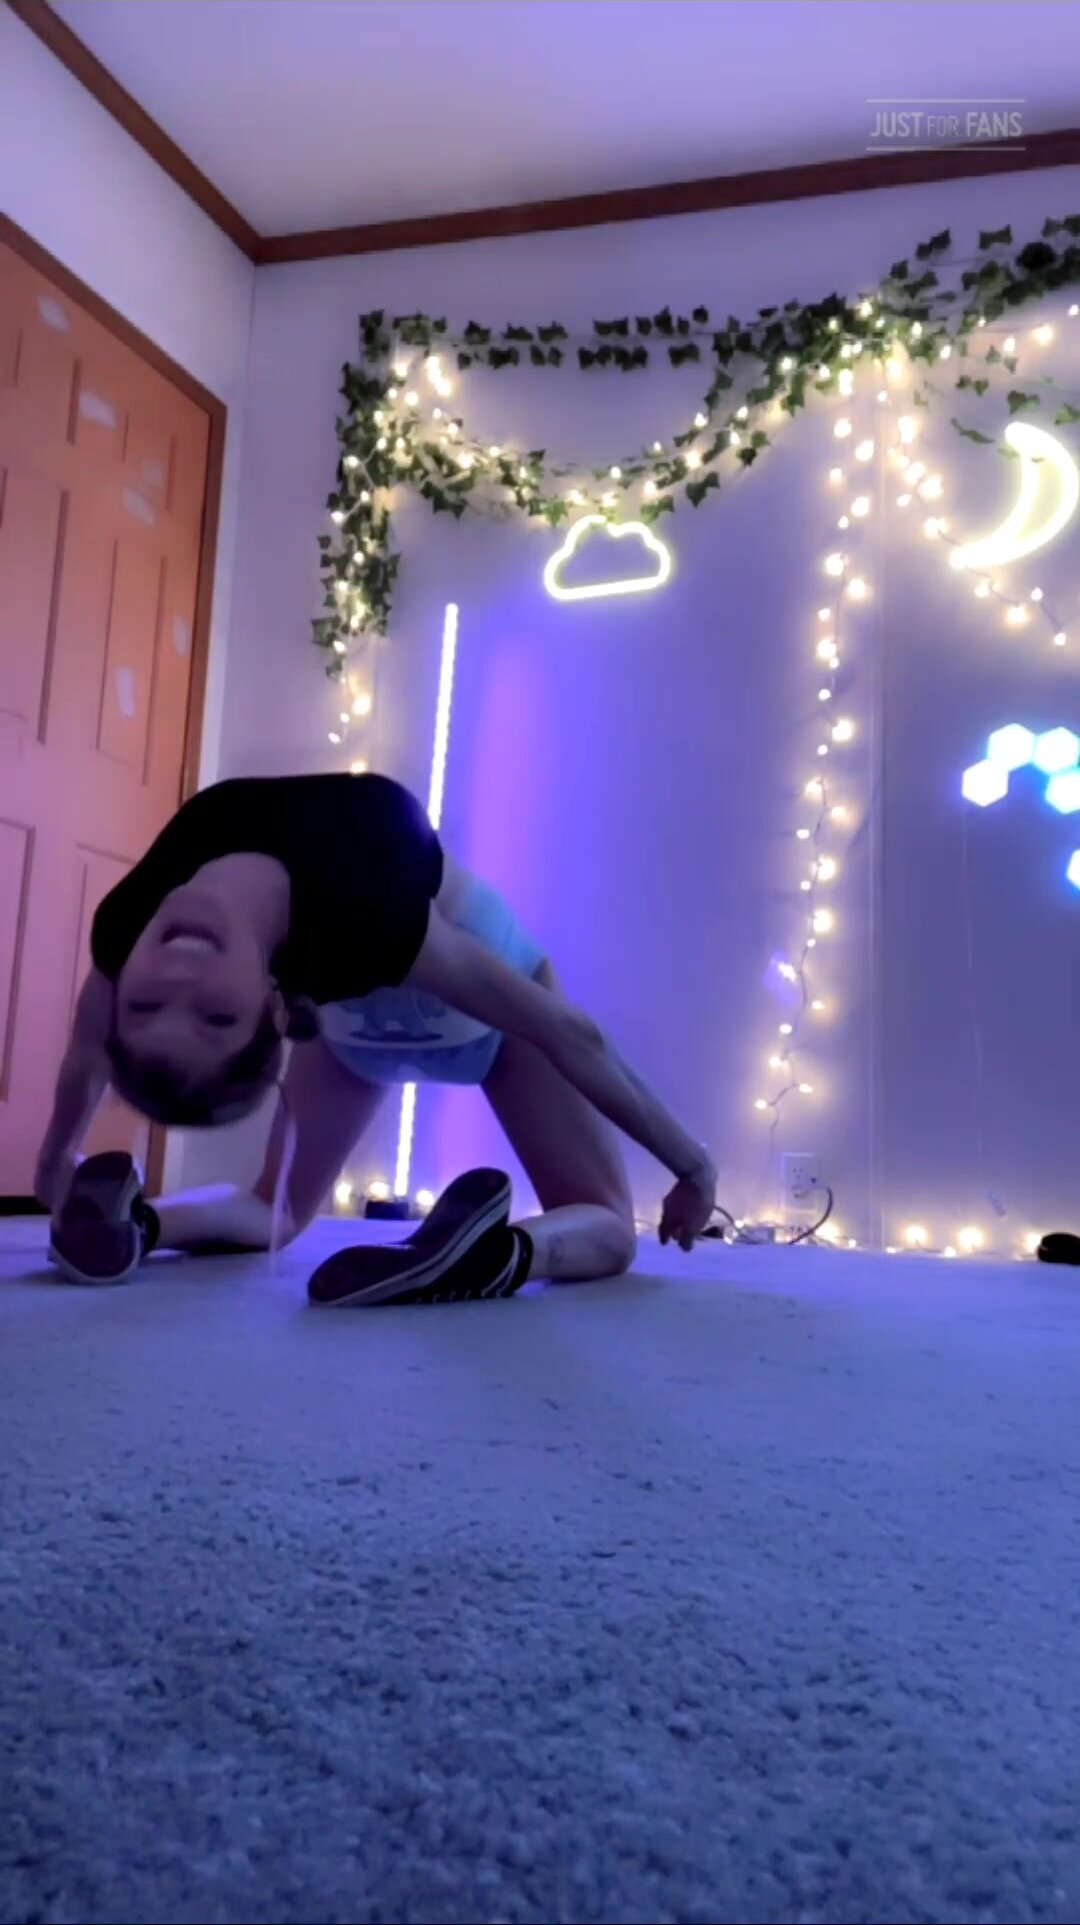 Diaper girl doing yoga